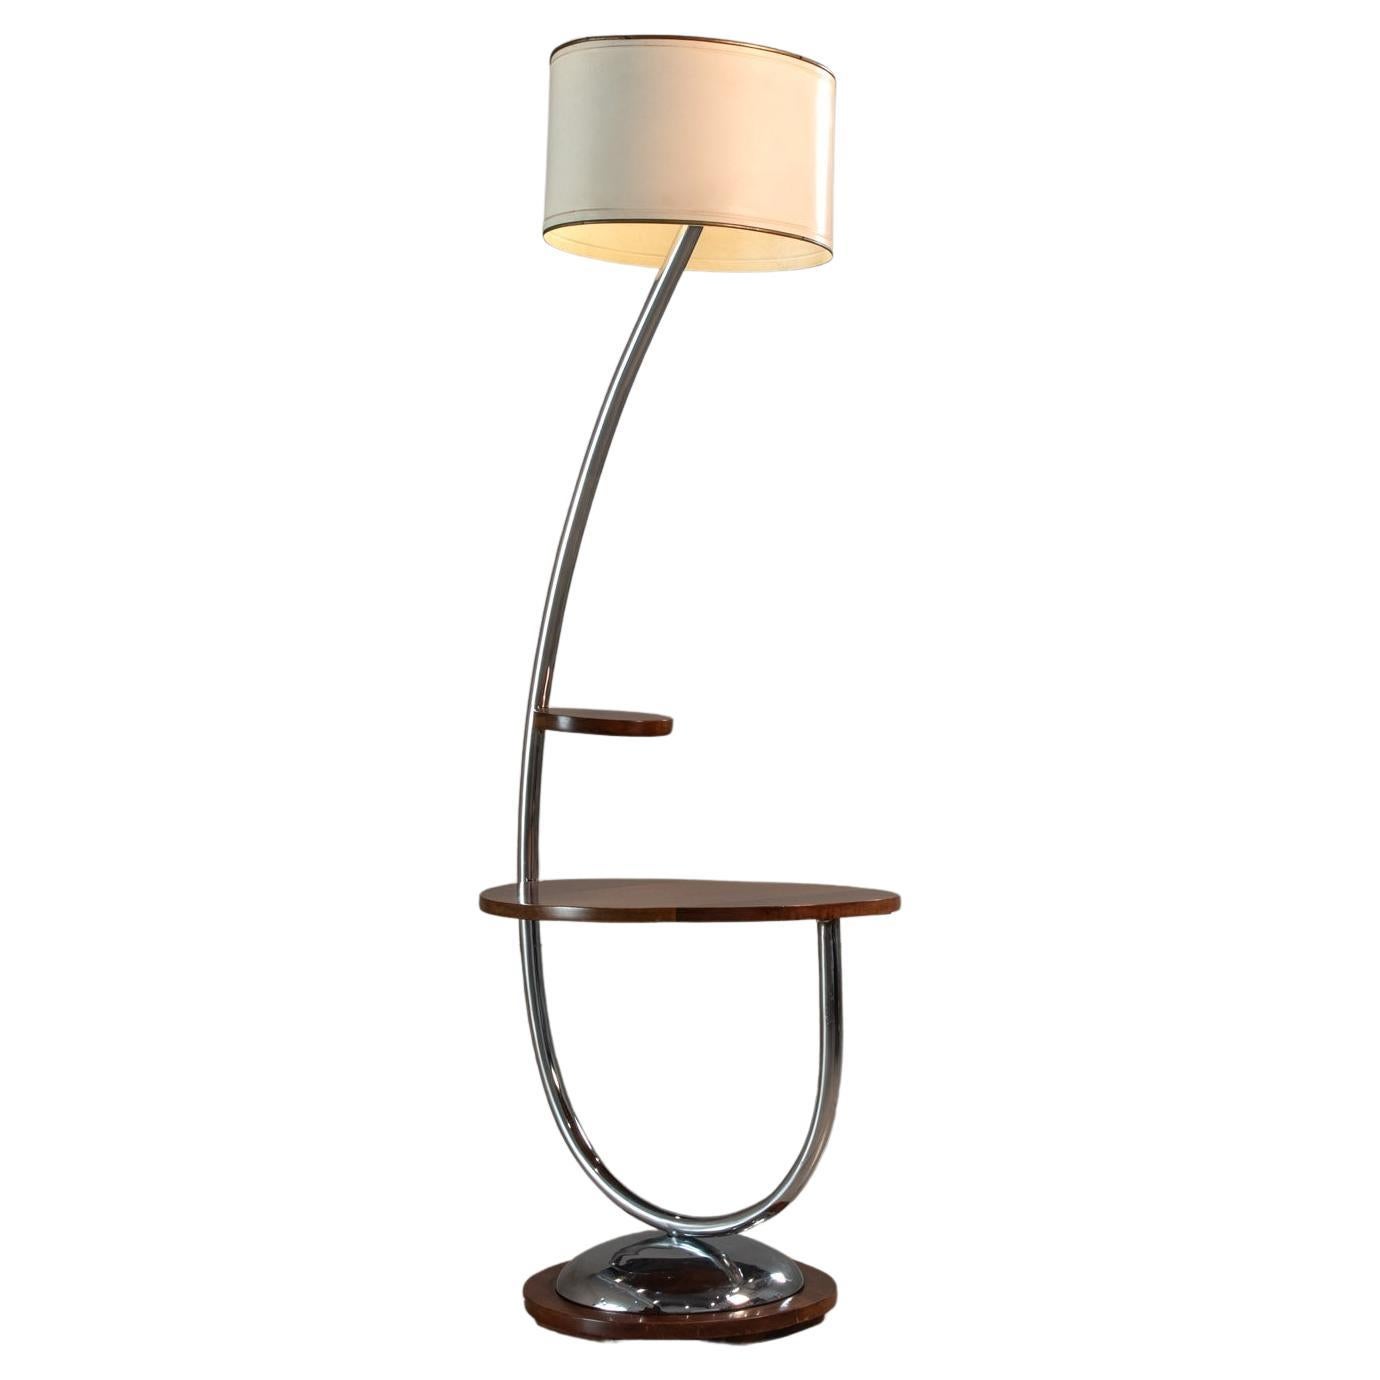 Floor Lamp with Side Table, by John Graz, Brazilian Art Deco